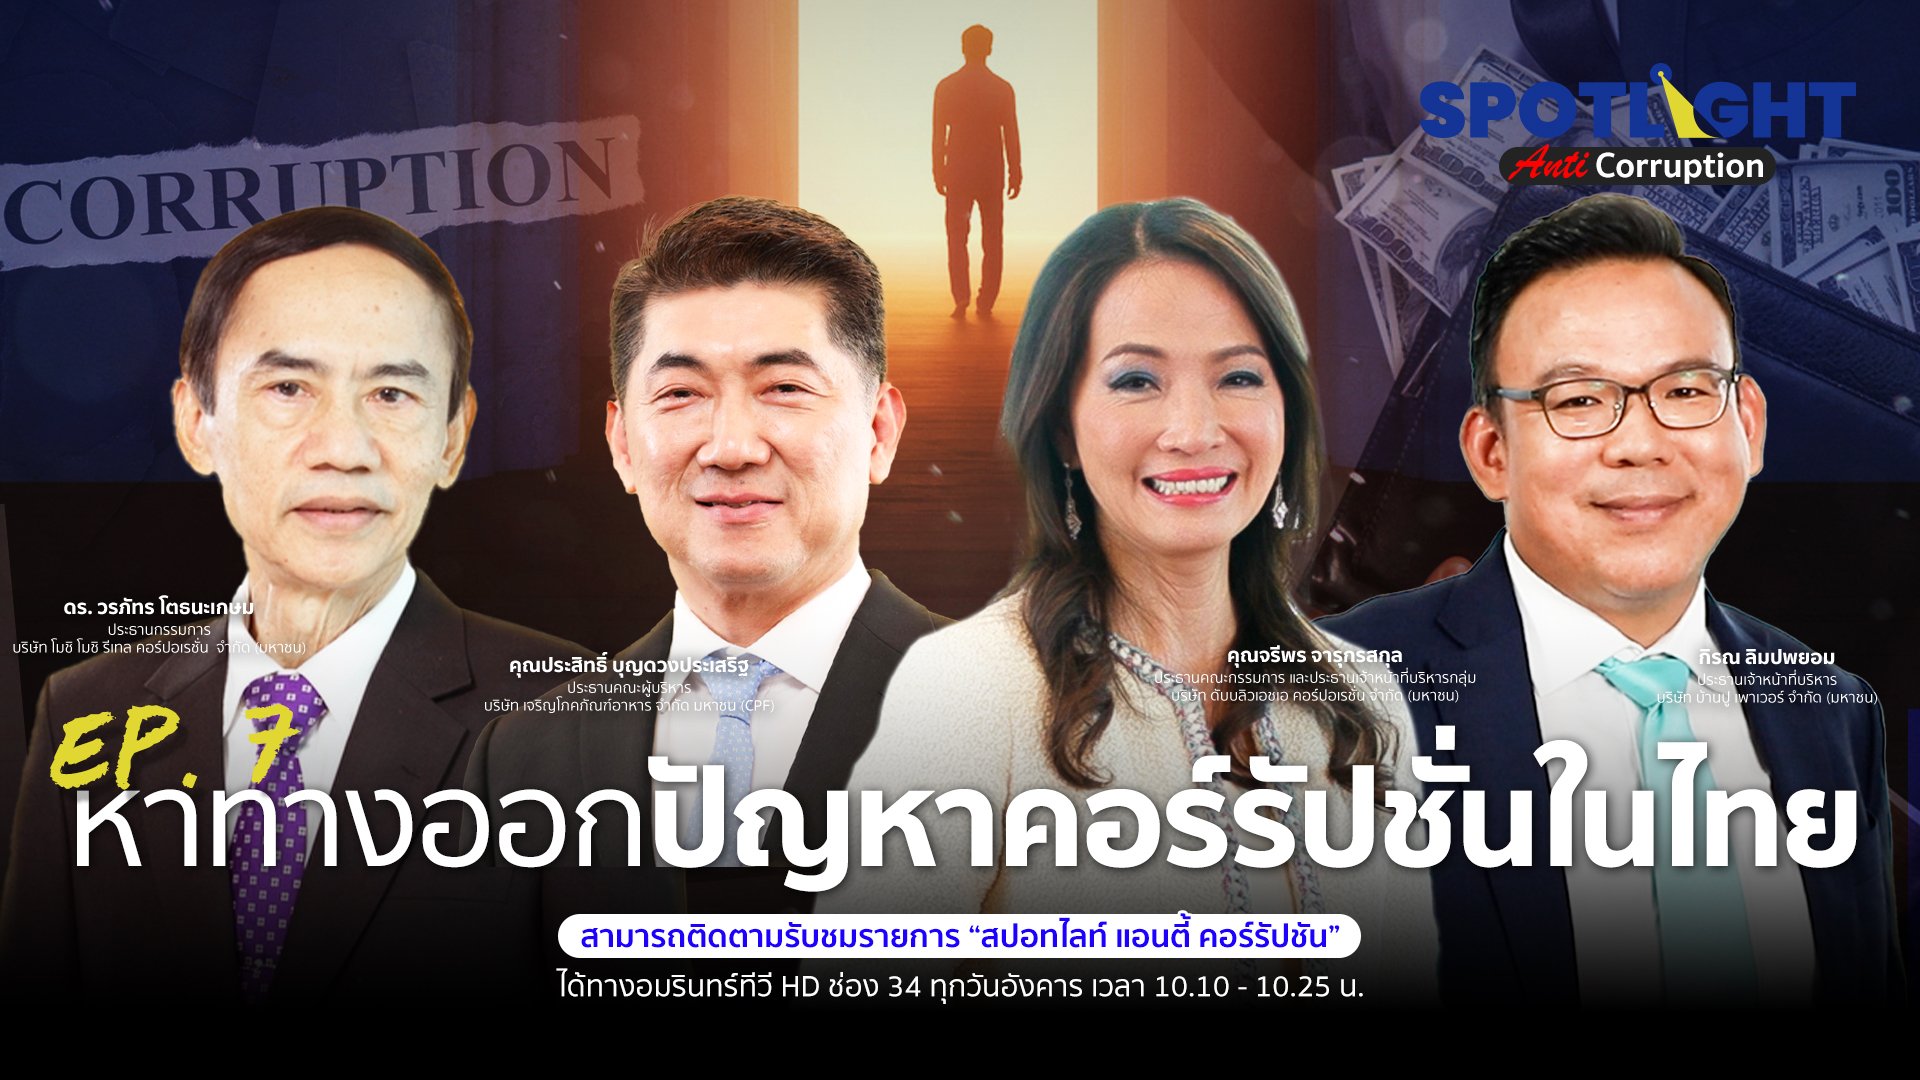 หาทางออกปัญหาคอร์รัปชั่นในไทย | Spotlight | 16 พ.ค. 66 | AMARIN TVHD34